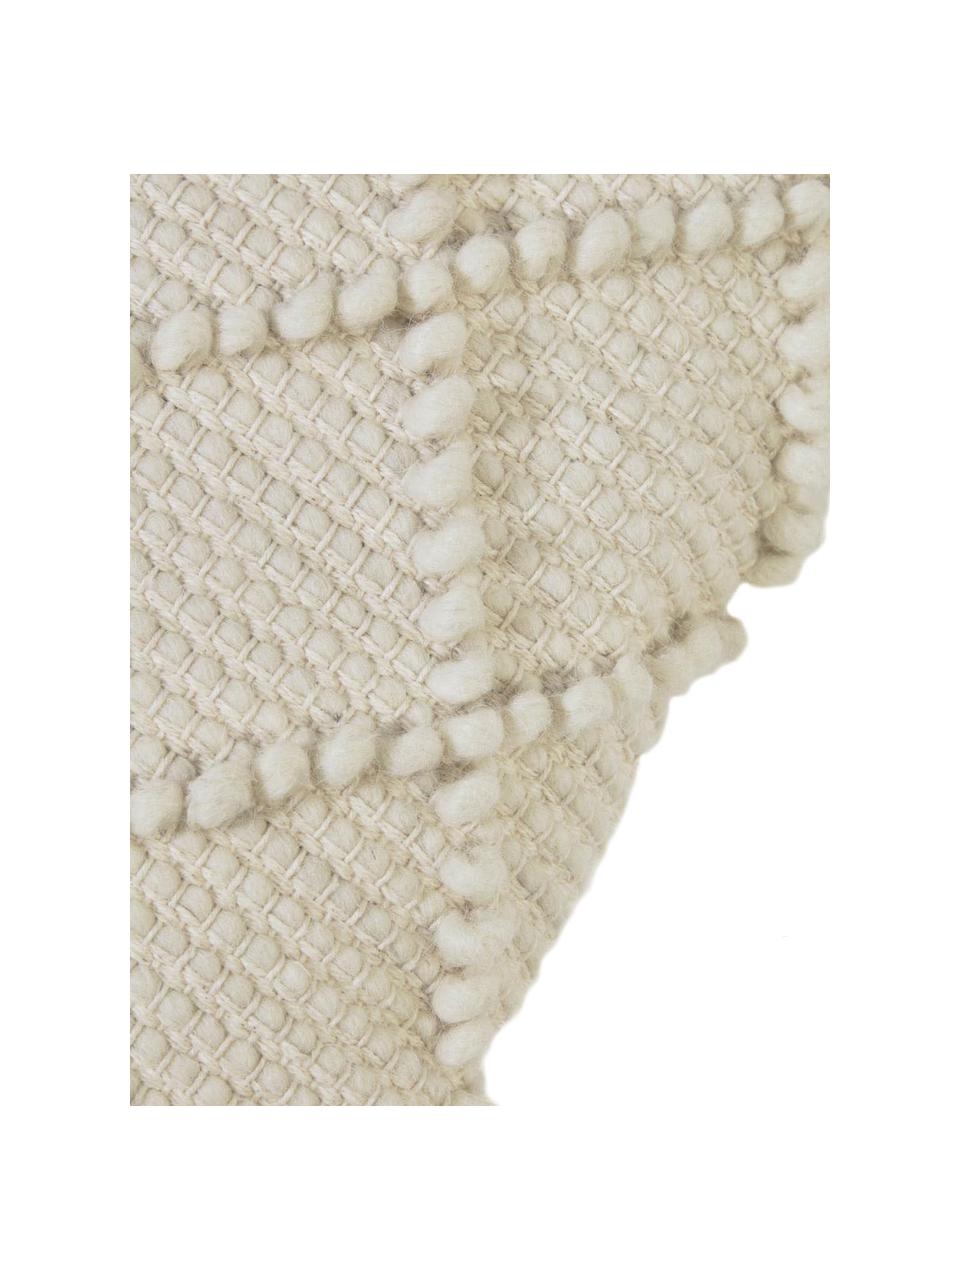 Boho-Kissenhülle Kerenise mit Hoch-Tief Struktur, 80% Wolle, 20% Baumwolle, Beige, 45 x 45 cm